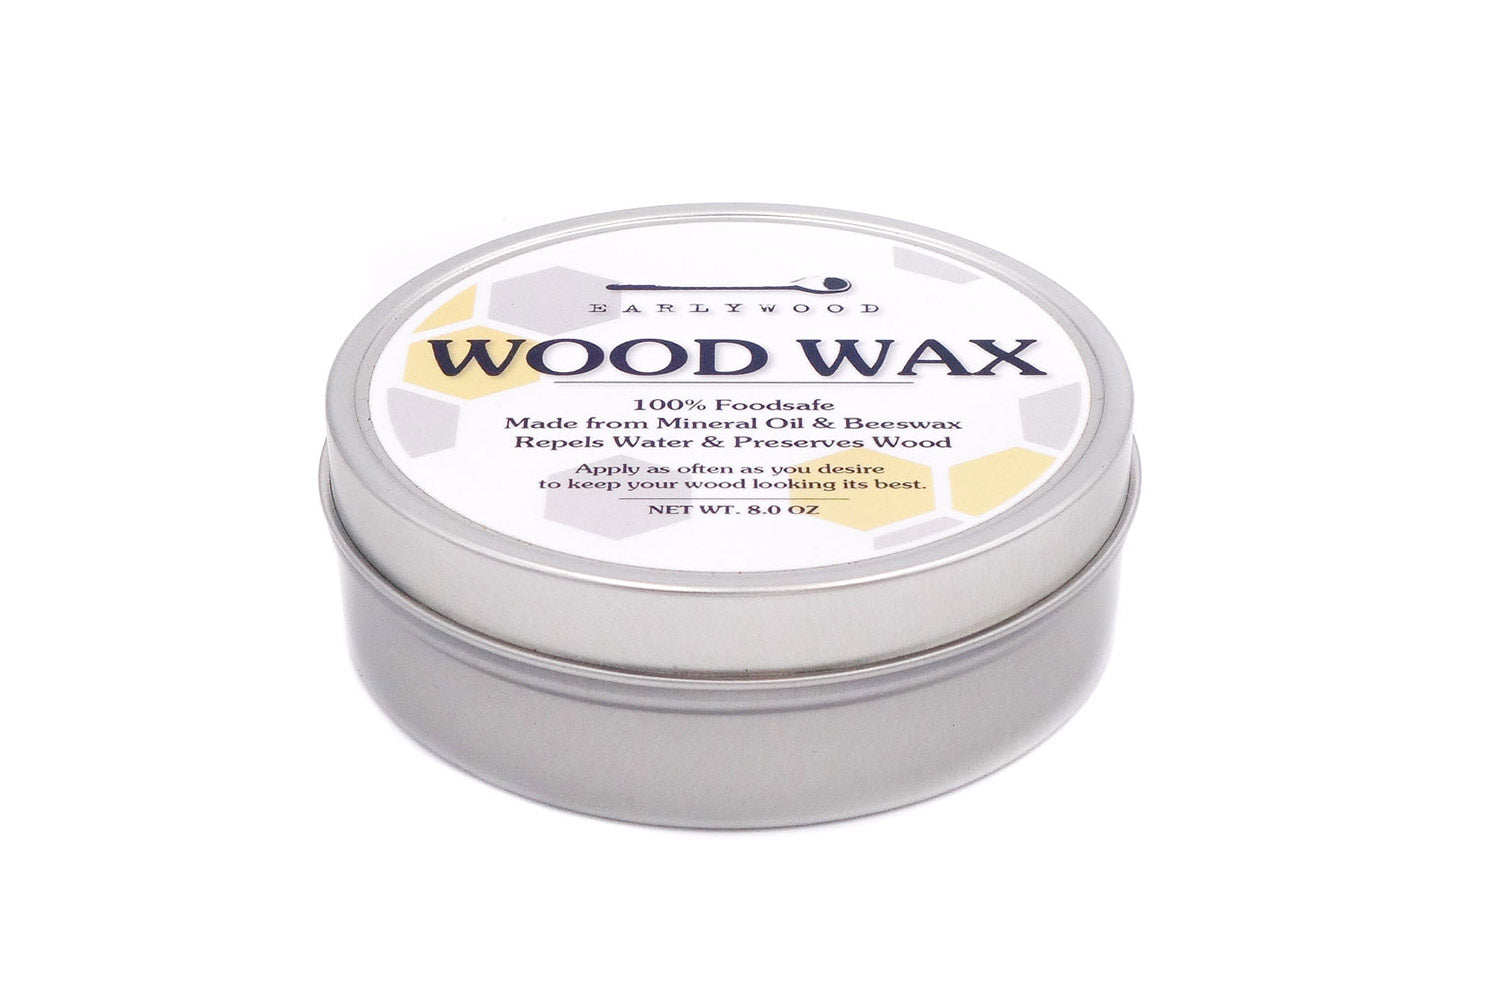 Wood wax